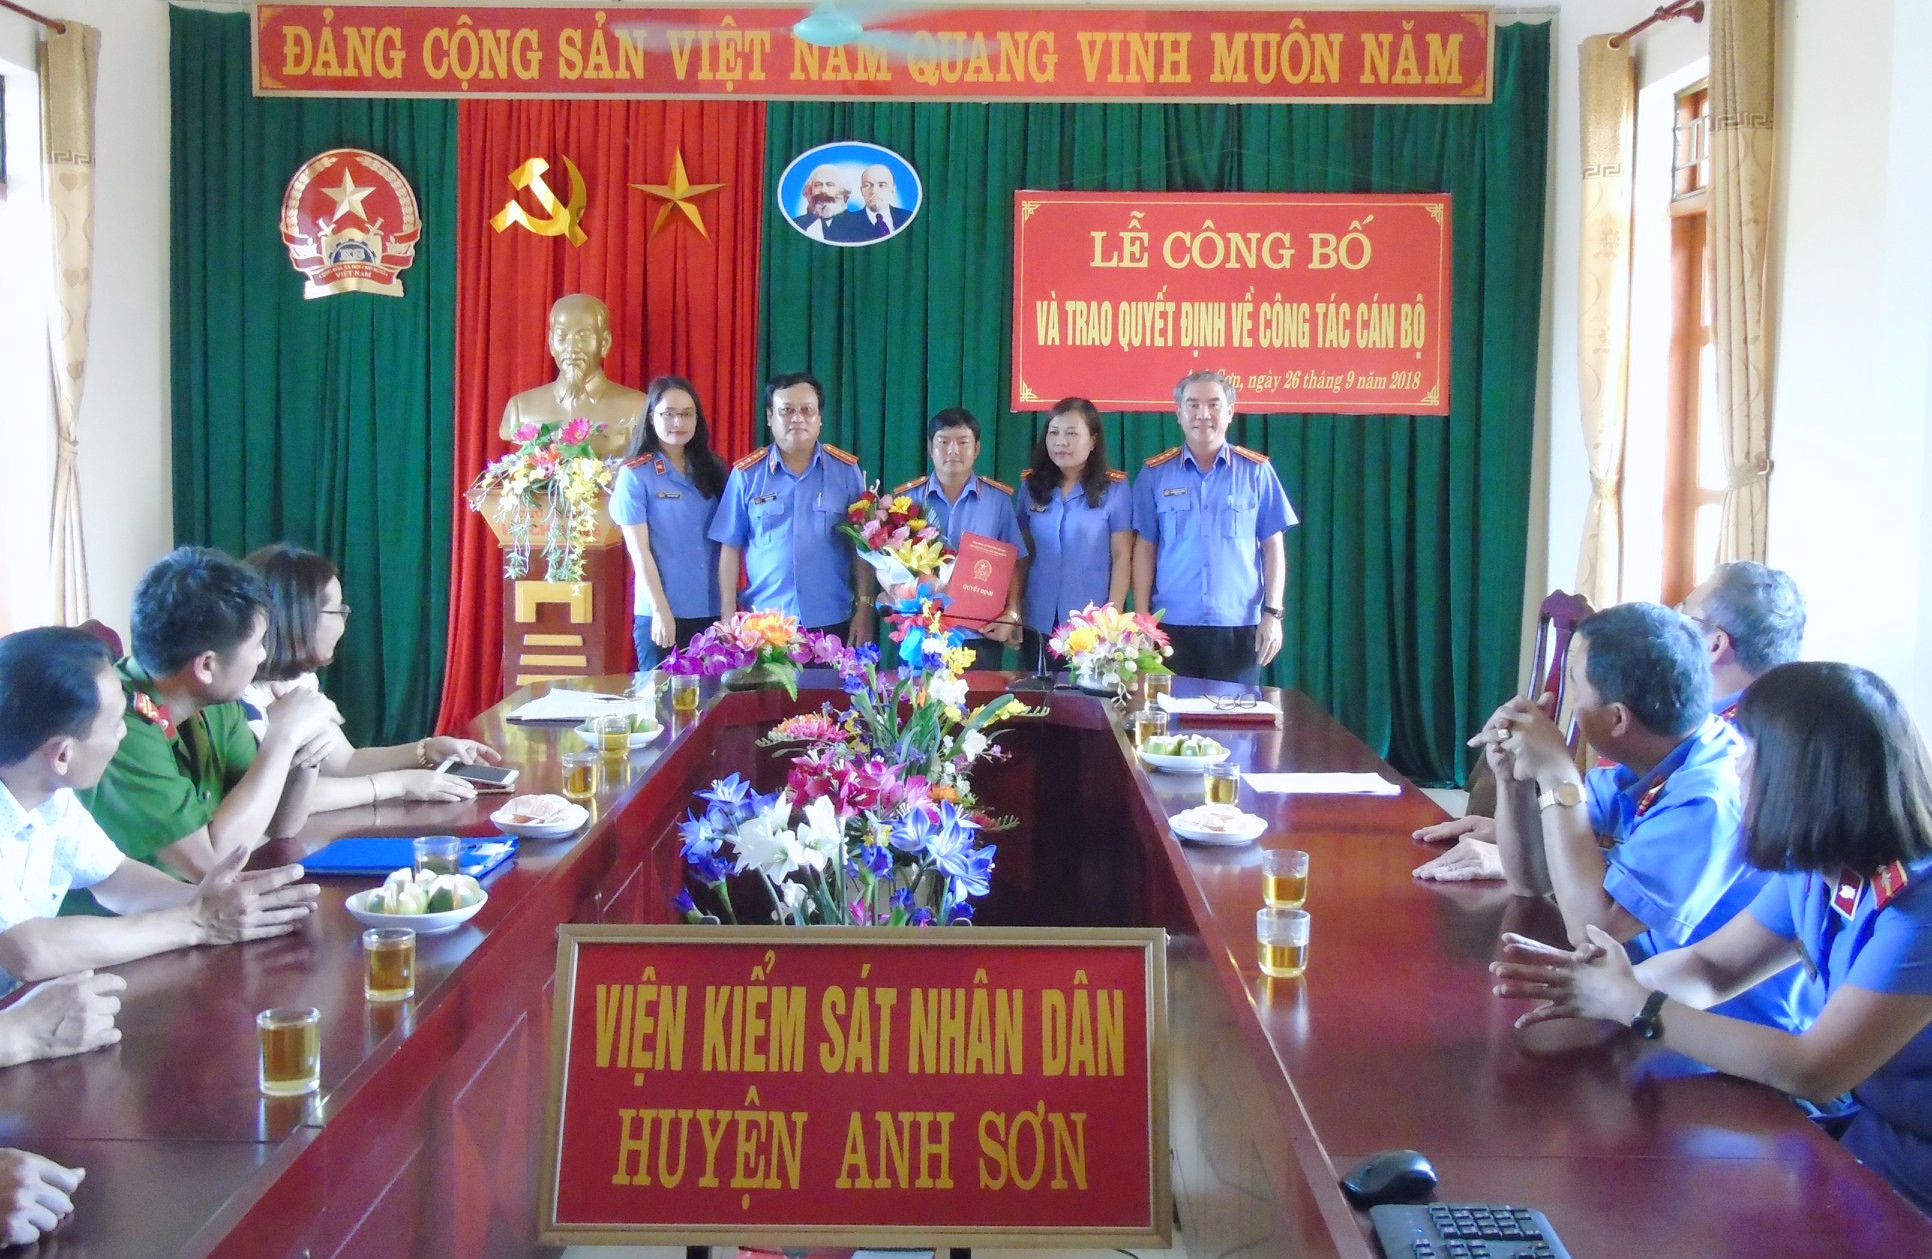 Đồng chí Nguyễn Anh Tuấn nhận quyết định giữ chức vụ Phó Viện trưởng Viện KSND huyện Anh Sơn. Ảnh: Minh Thái 